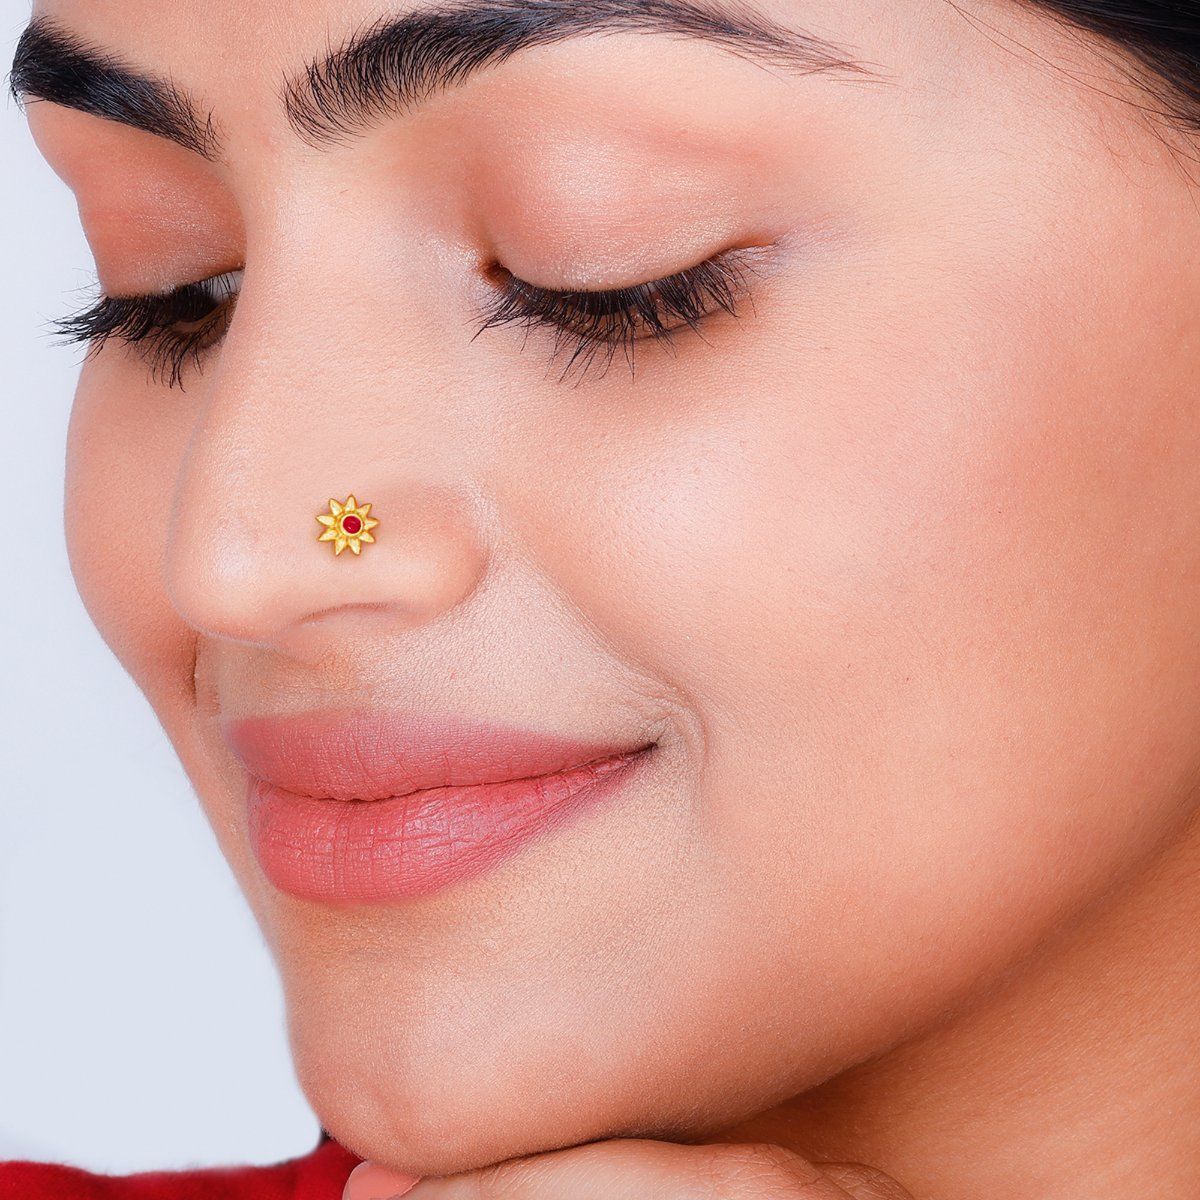 Buy Gold & Diamond Nose Ring In India Starting Range @ ₹6500/-